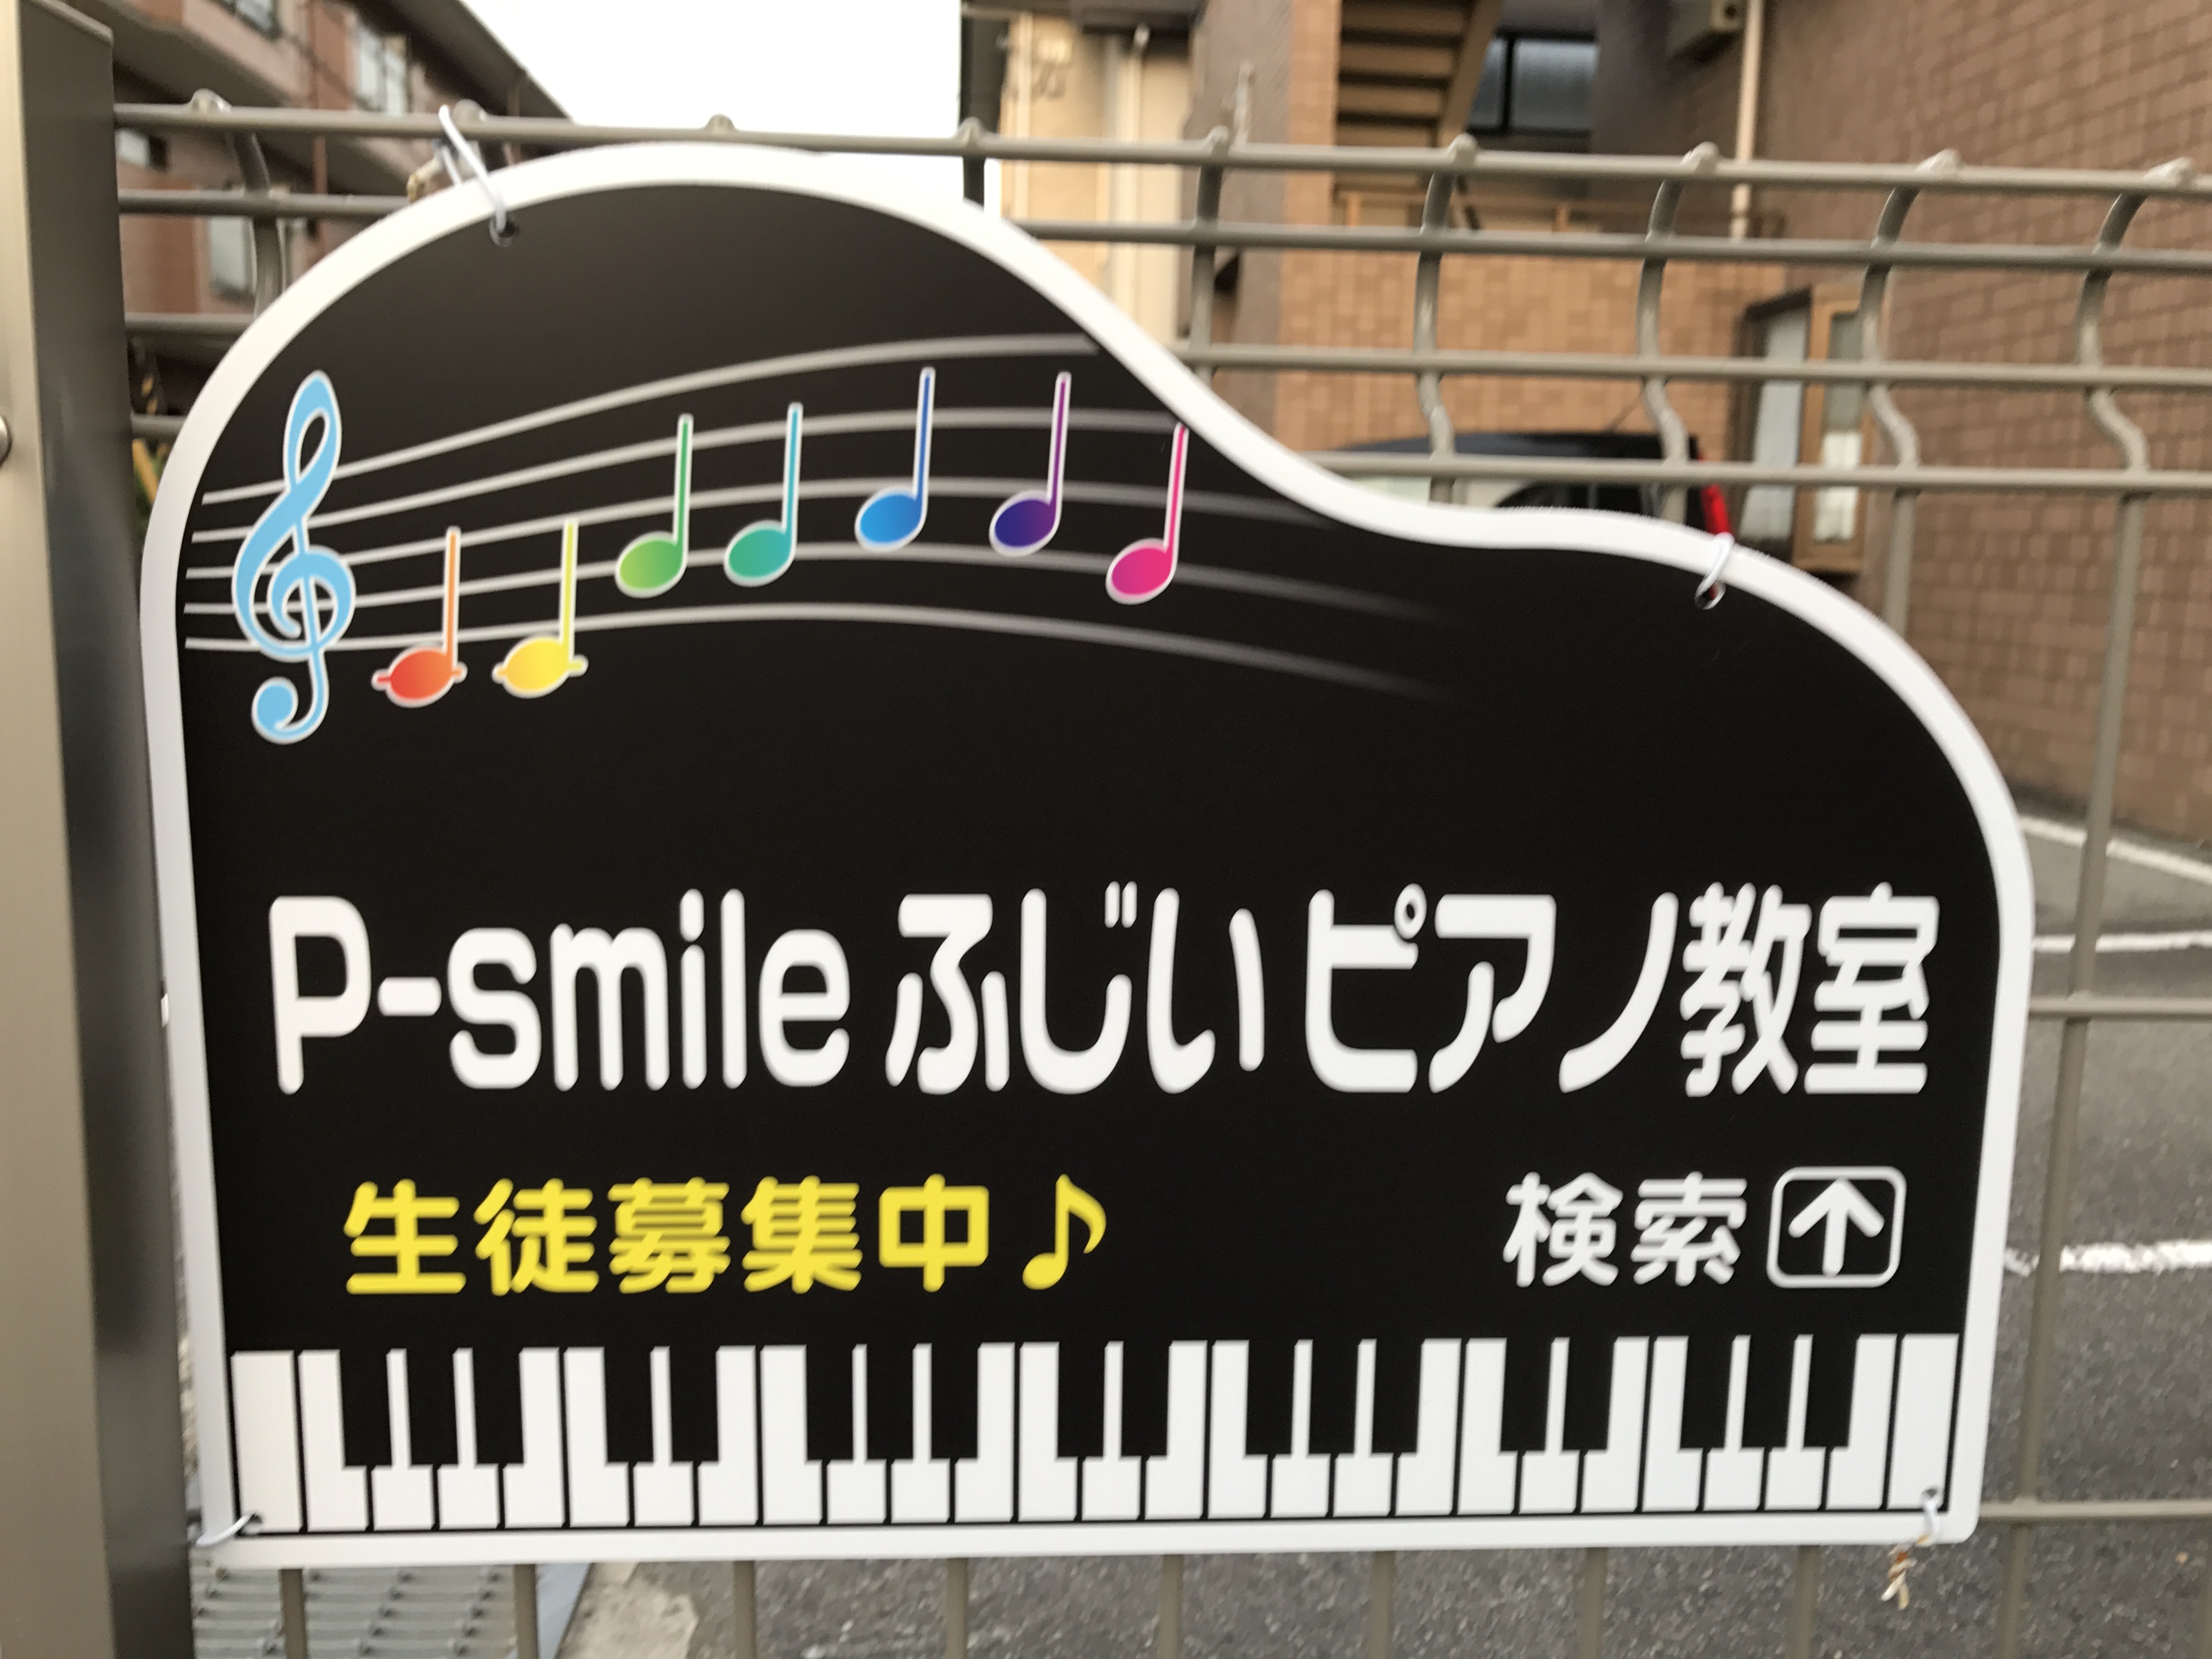 P-smile ふじいピアノ教室の只今体験レッスン受付中